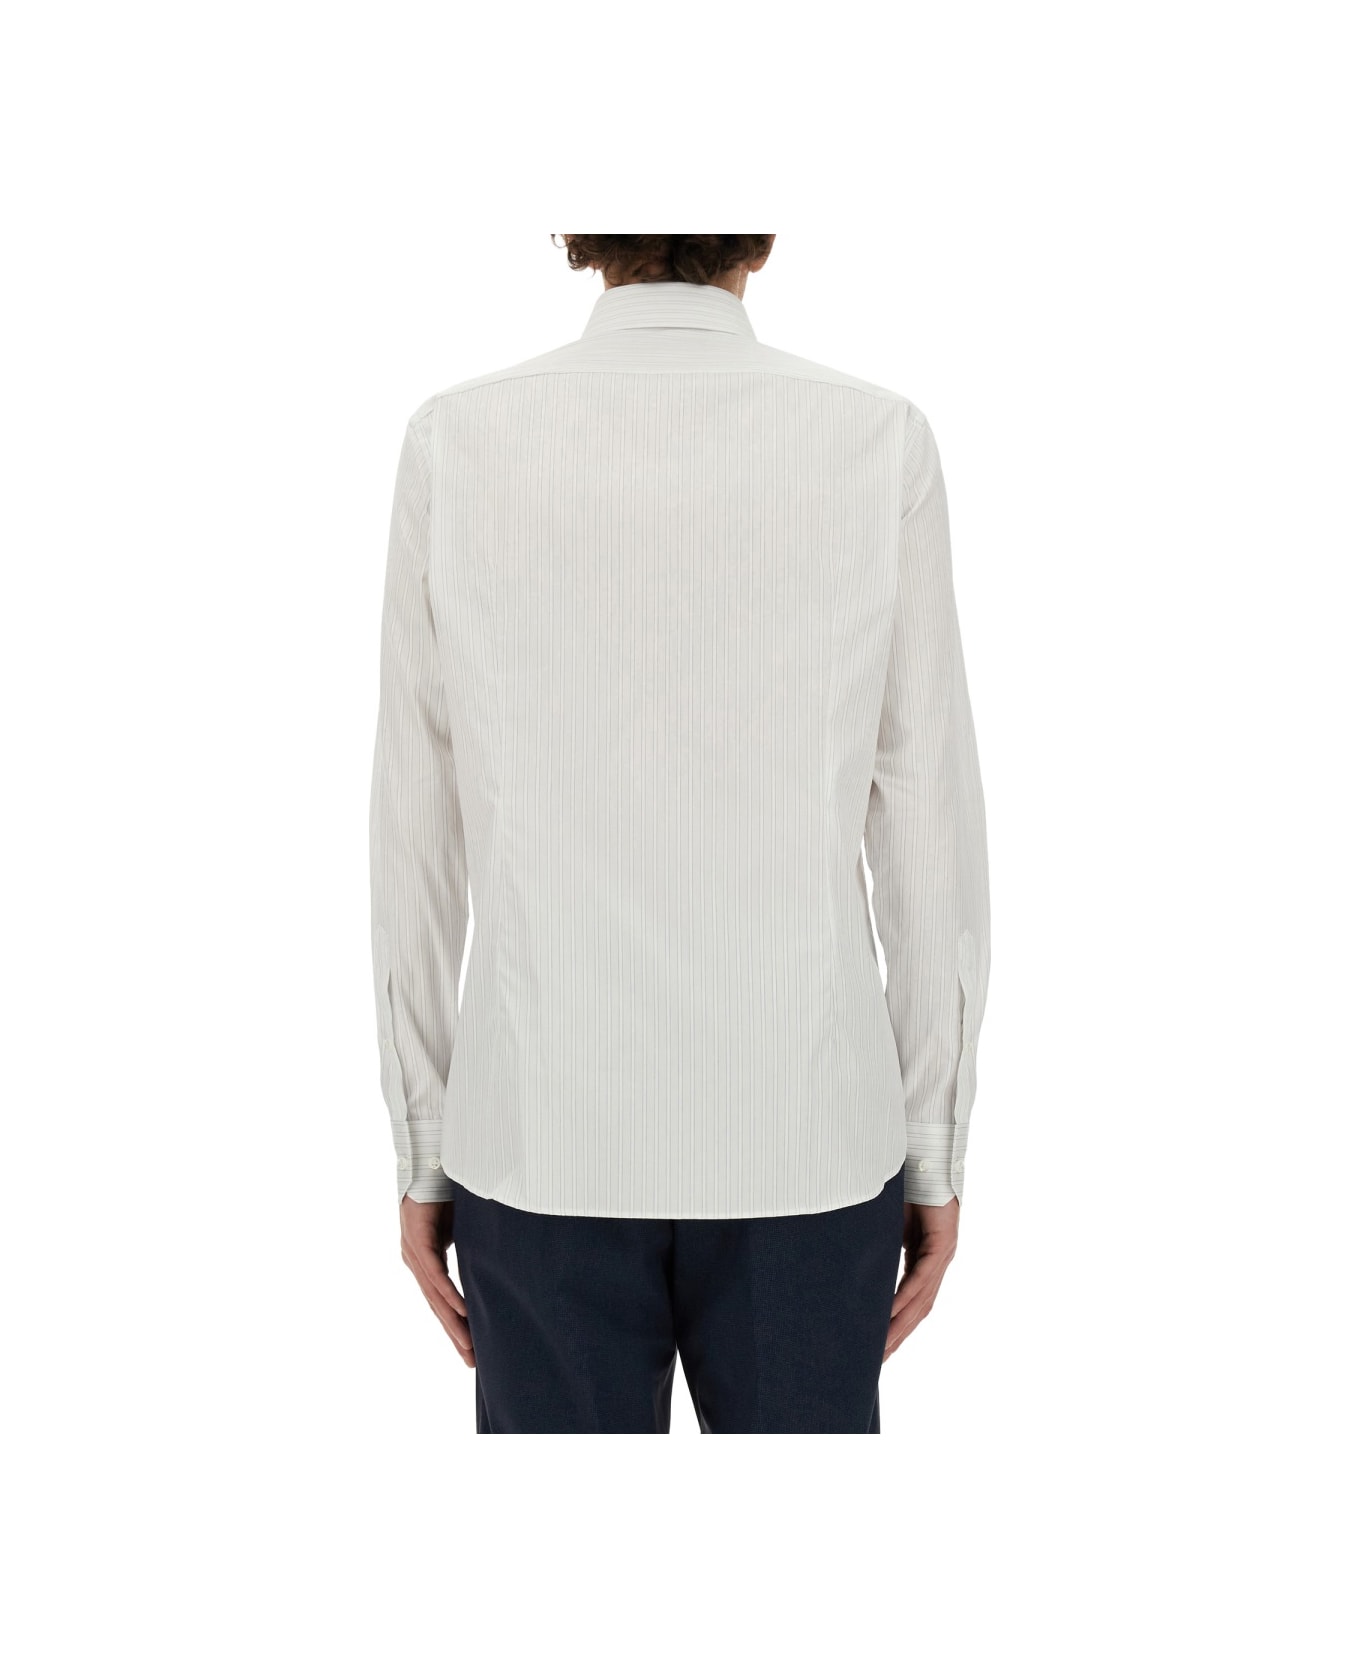 Hugo Boss Regular Fit Shirt - WHITE シャツ